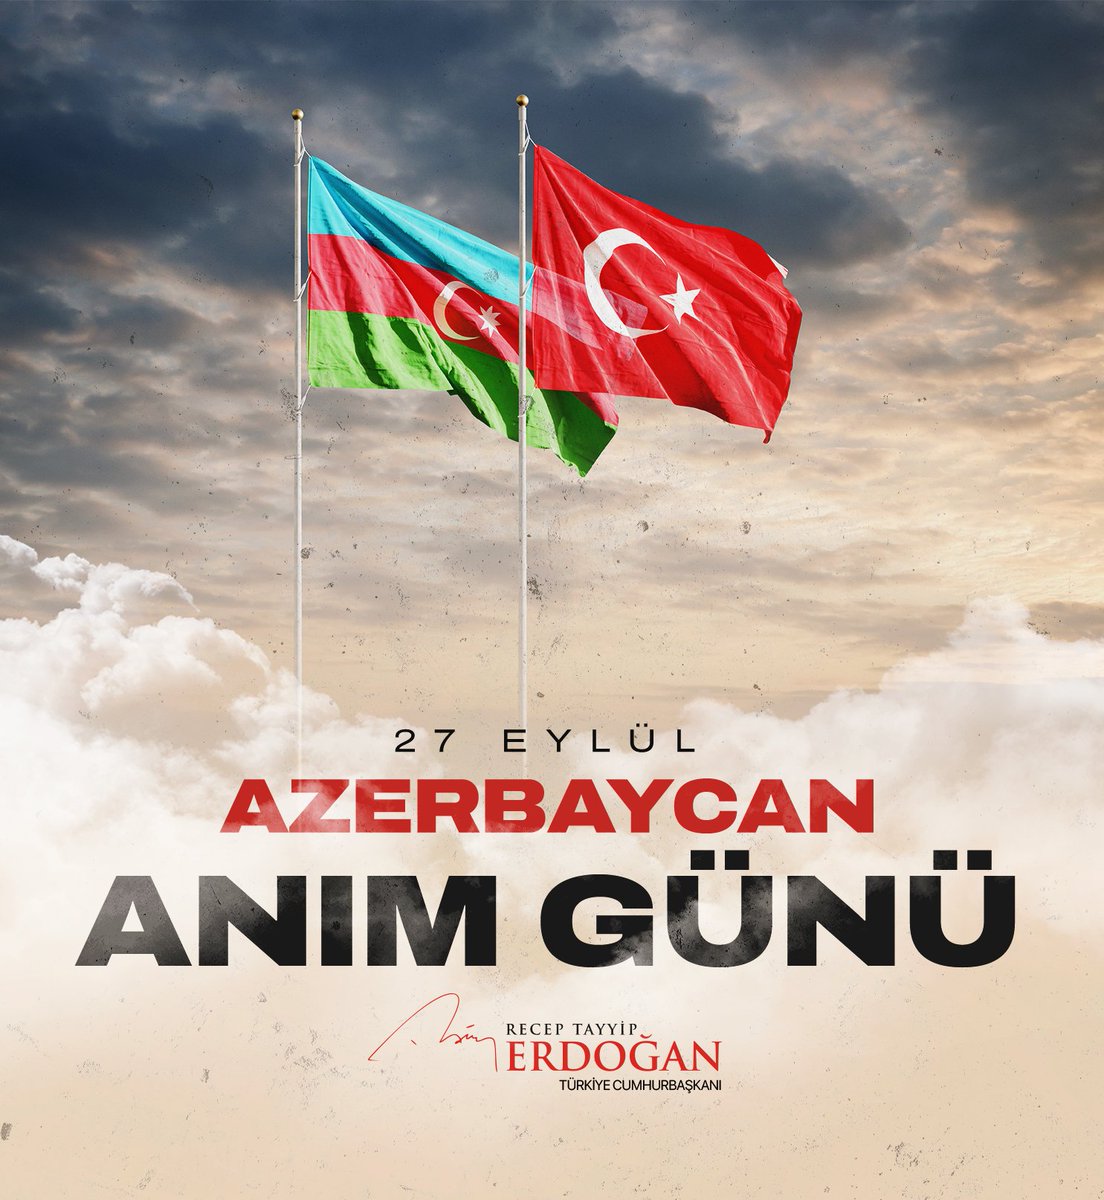 Karabağ'ın ve işgal altındaki Azerbaycan topraklarının destansı azatlık mücadelesinin başlangıcı olan Anım Günü'nde tüm şehitlerimizi rahmetle, gazilerimizi hürmetle yâd ediyorum. Qarabağ Azərbaycan'dır! 🇹🇷🇦🇿